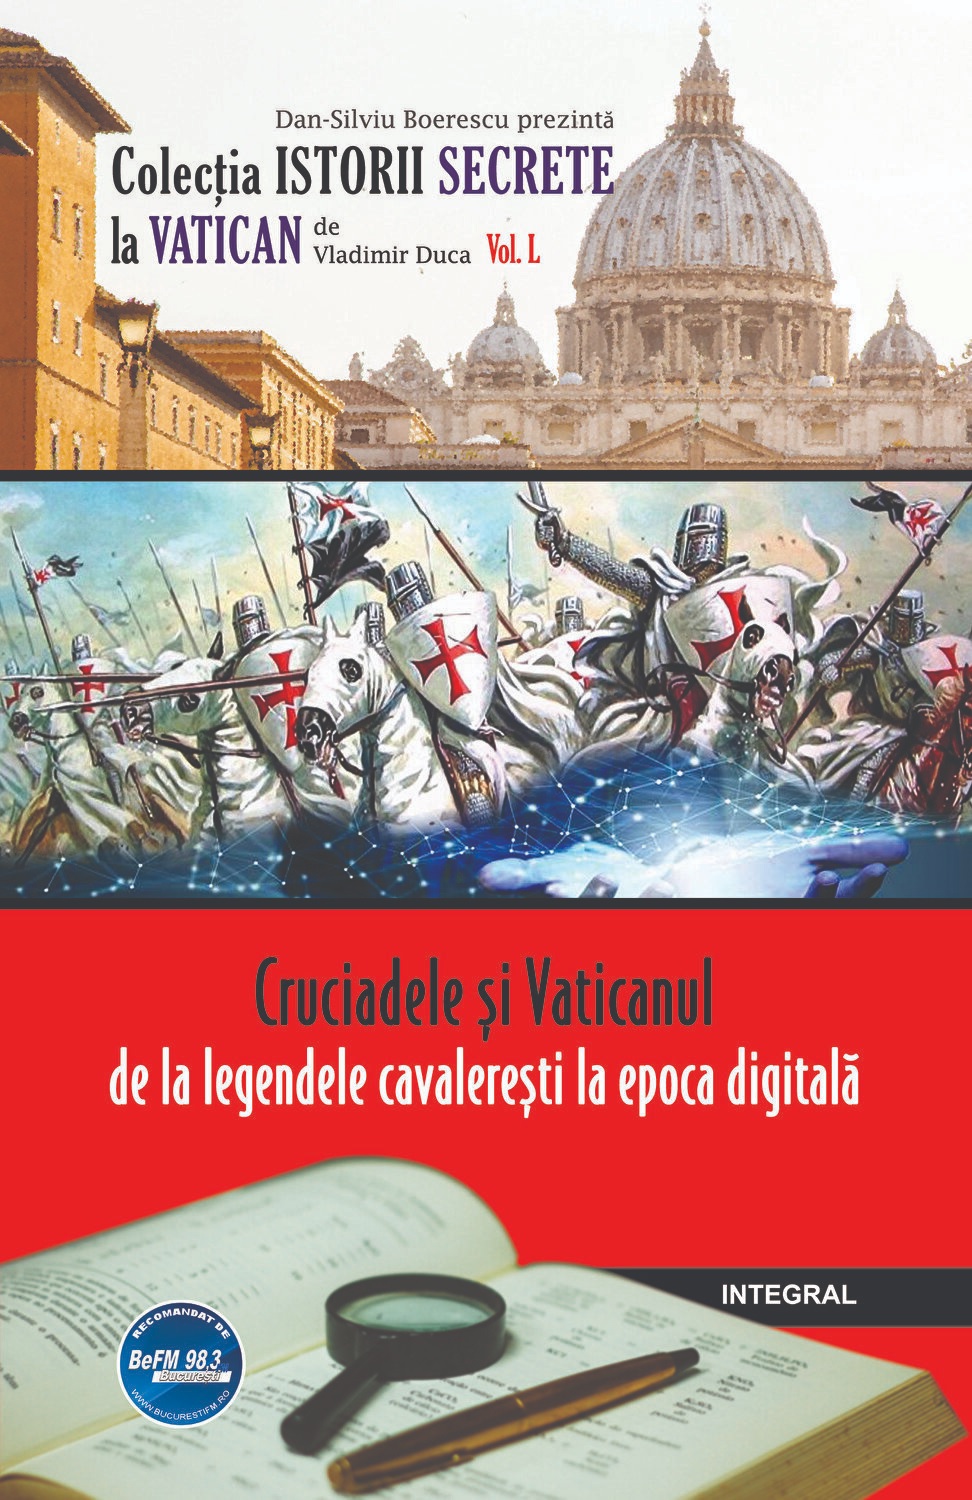 Cruciadele si Vaticanul – de la legendele cavaleresti la epoca digitala | Vladimir Duca carturesti.ro imagine 2022